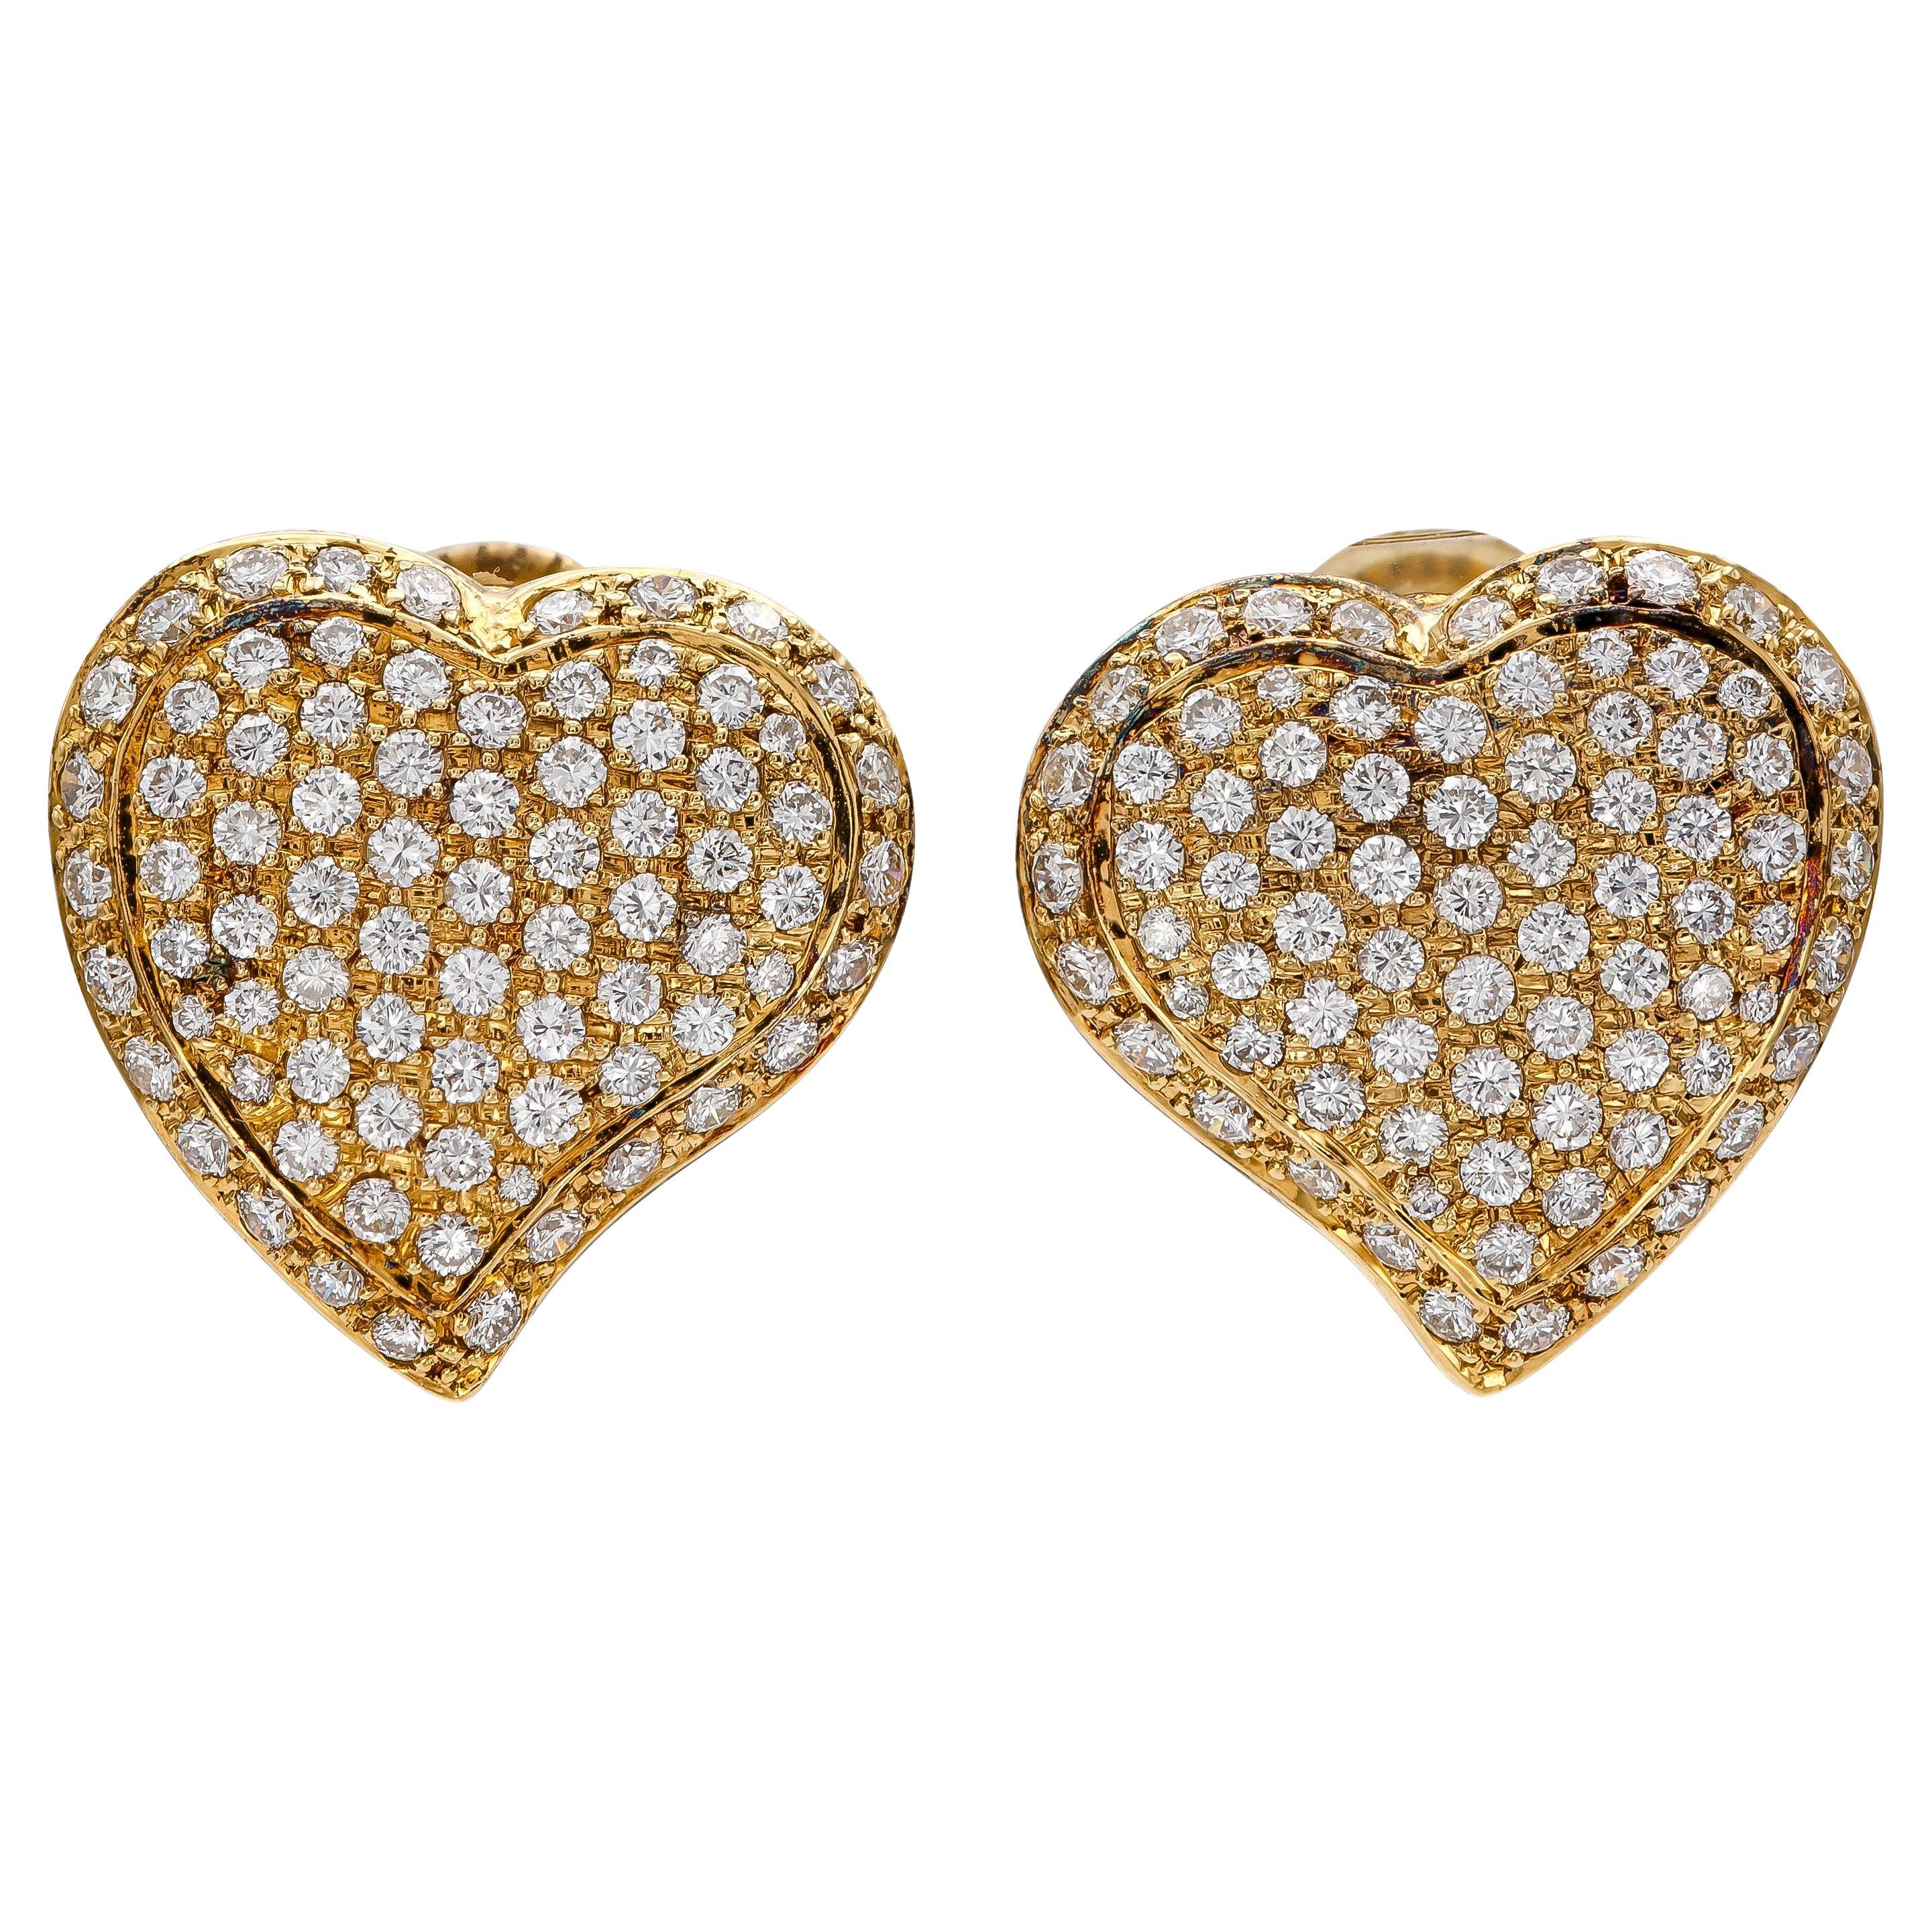 Vintage 1980s 4.20 Carat Diamond Heart Earrings